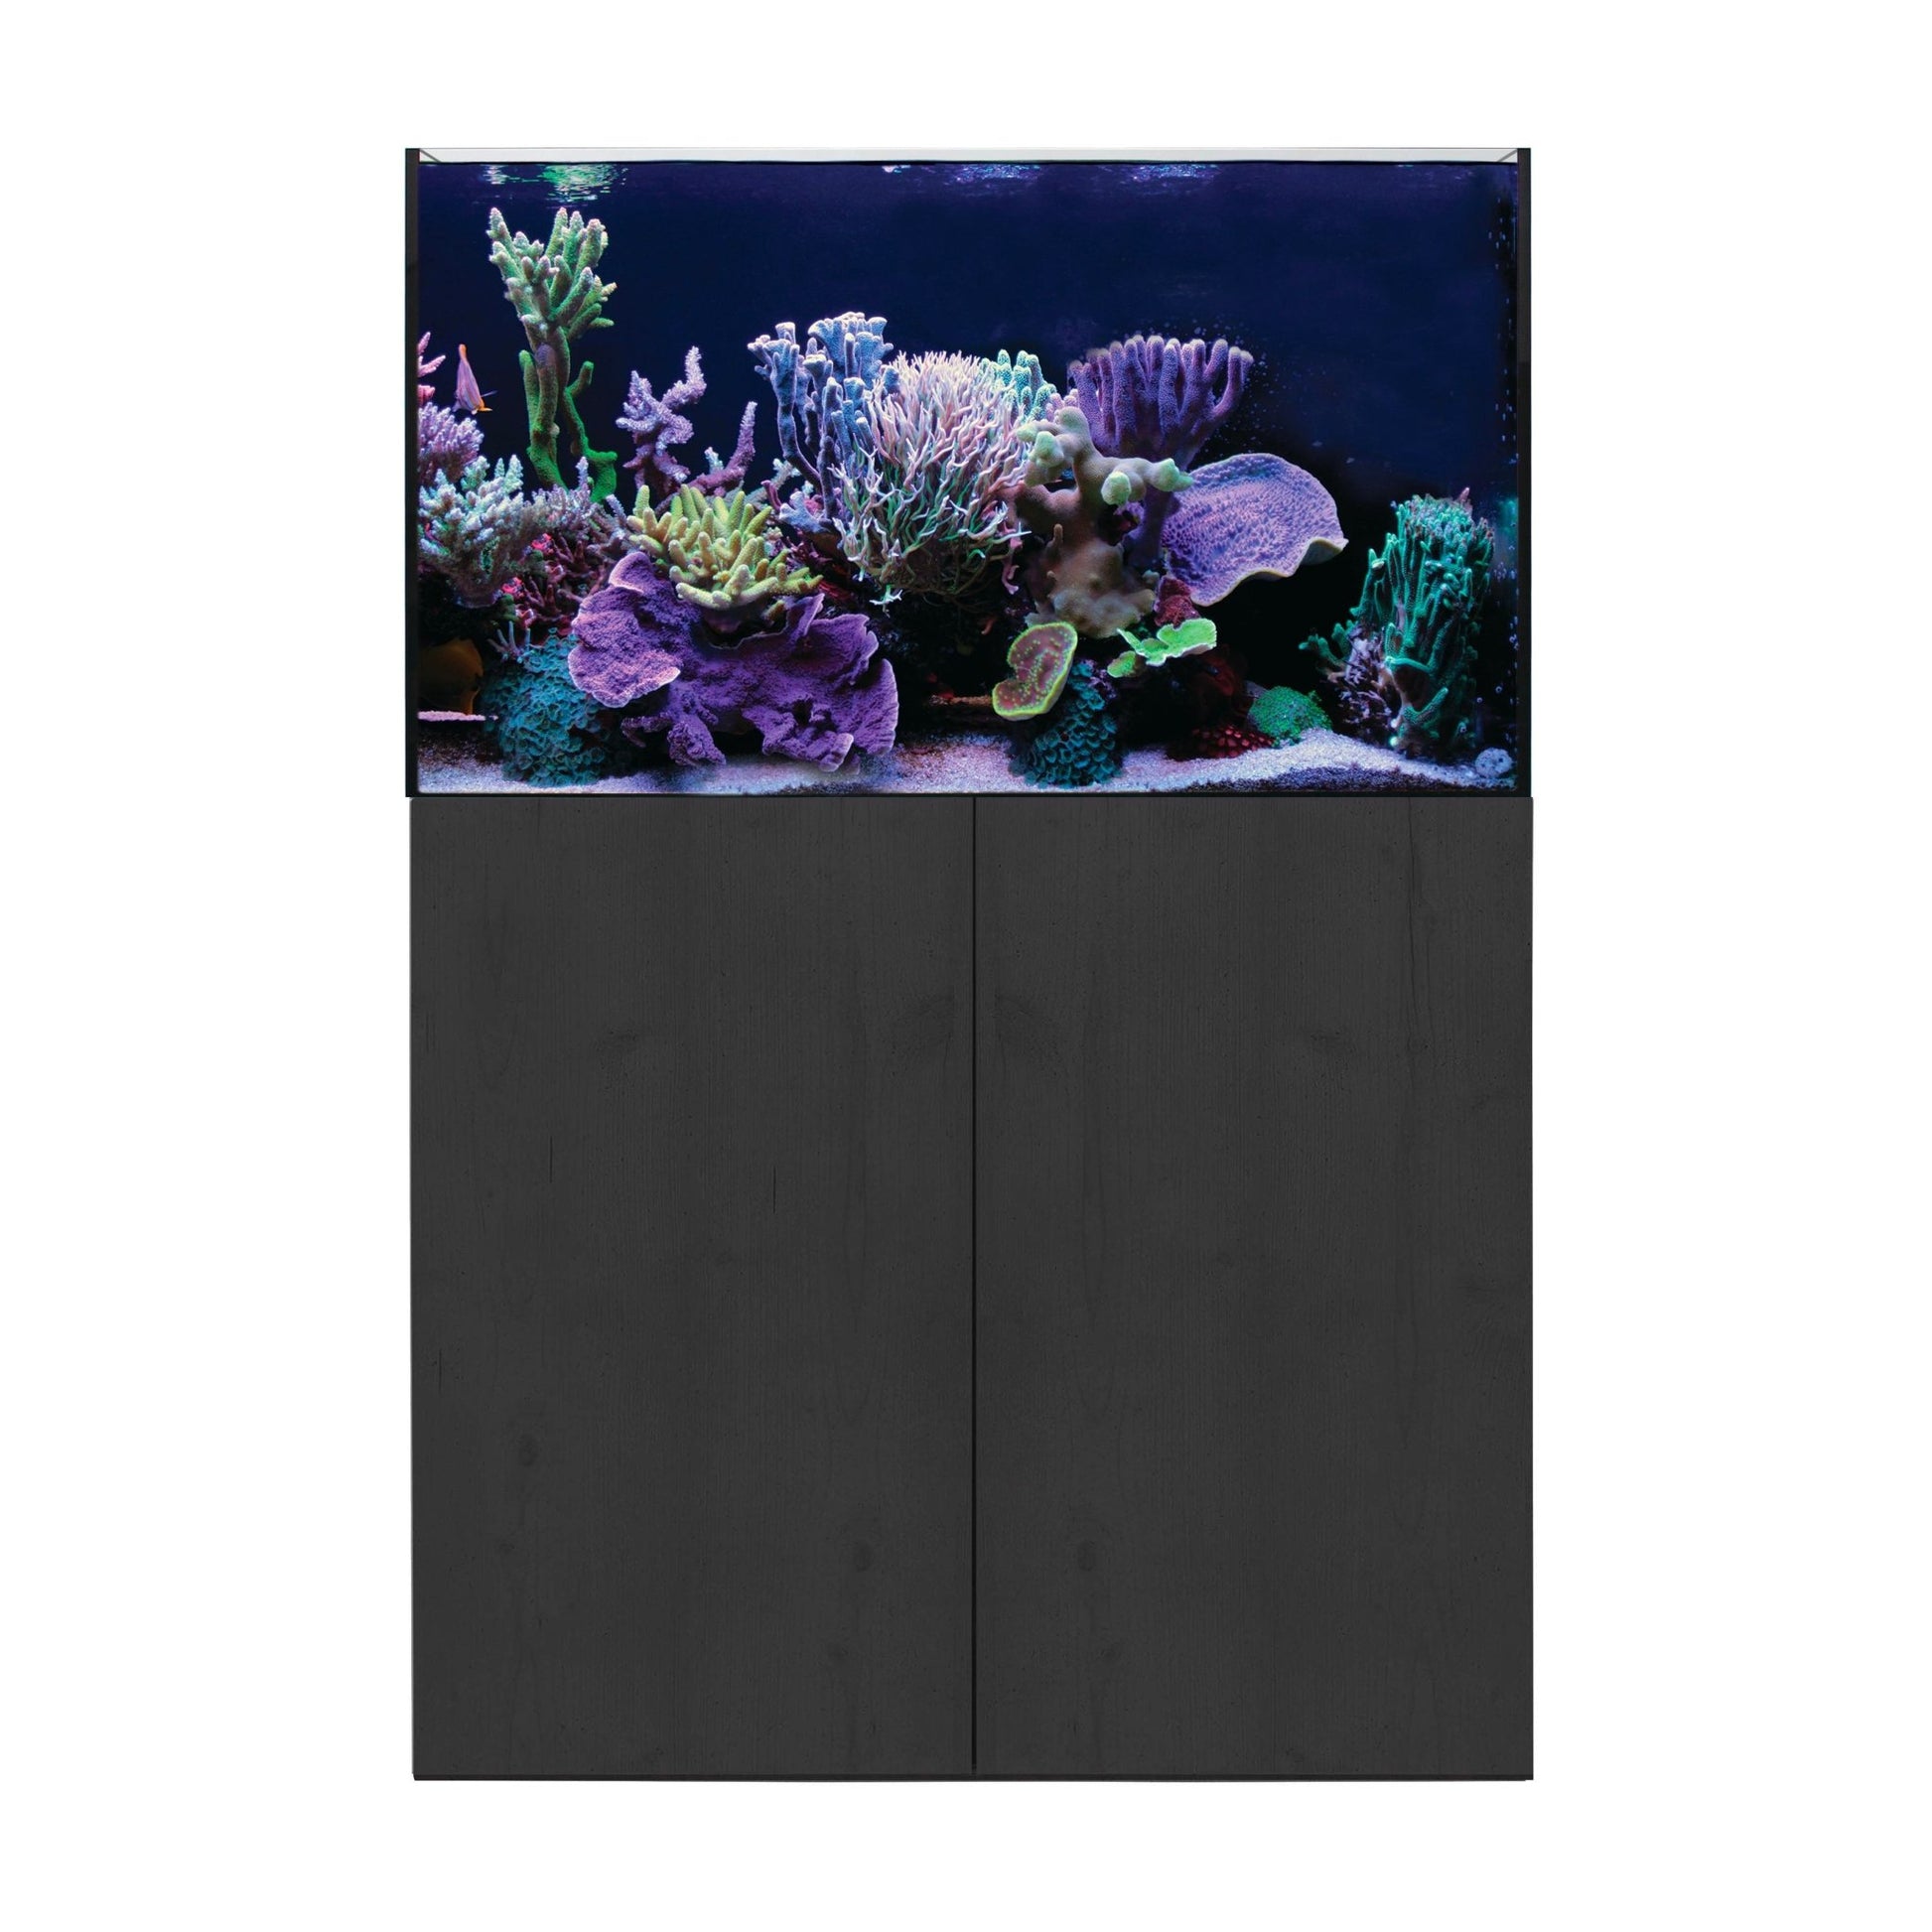 Aqua One ReefSys 255 Aquarium and Cabinet - Black - Charterhouse Aquatics